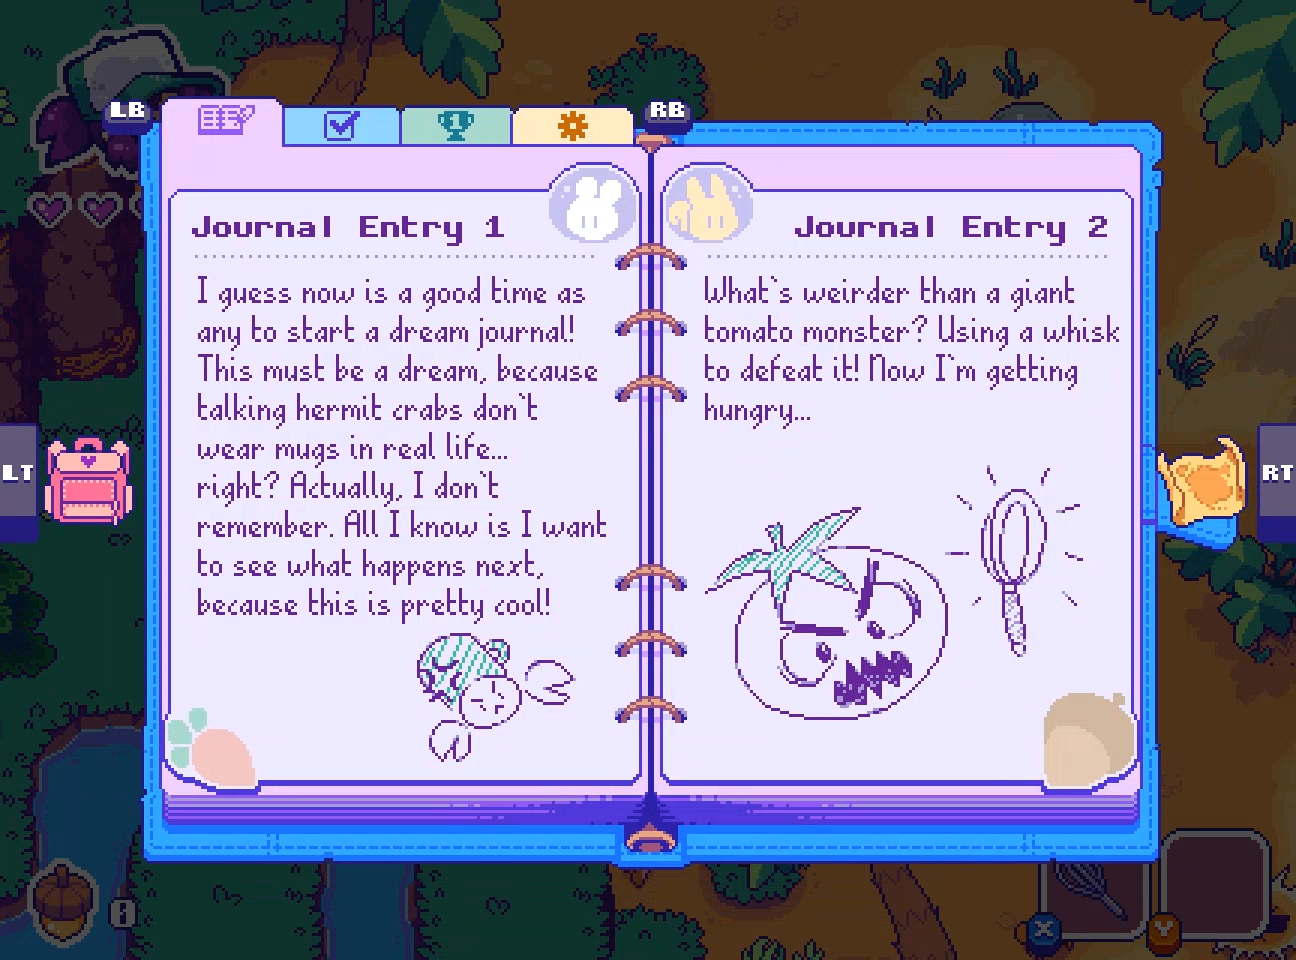 Sam's Journal